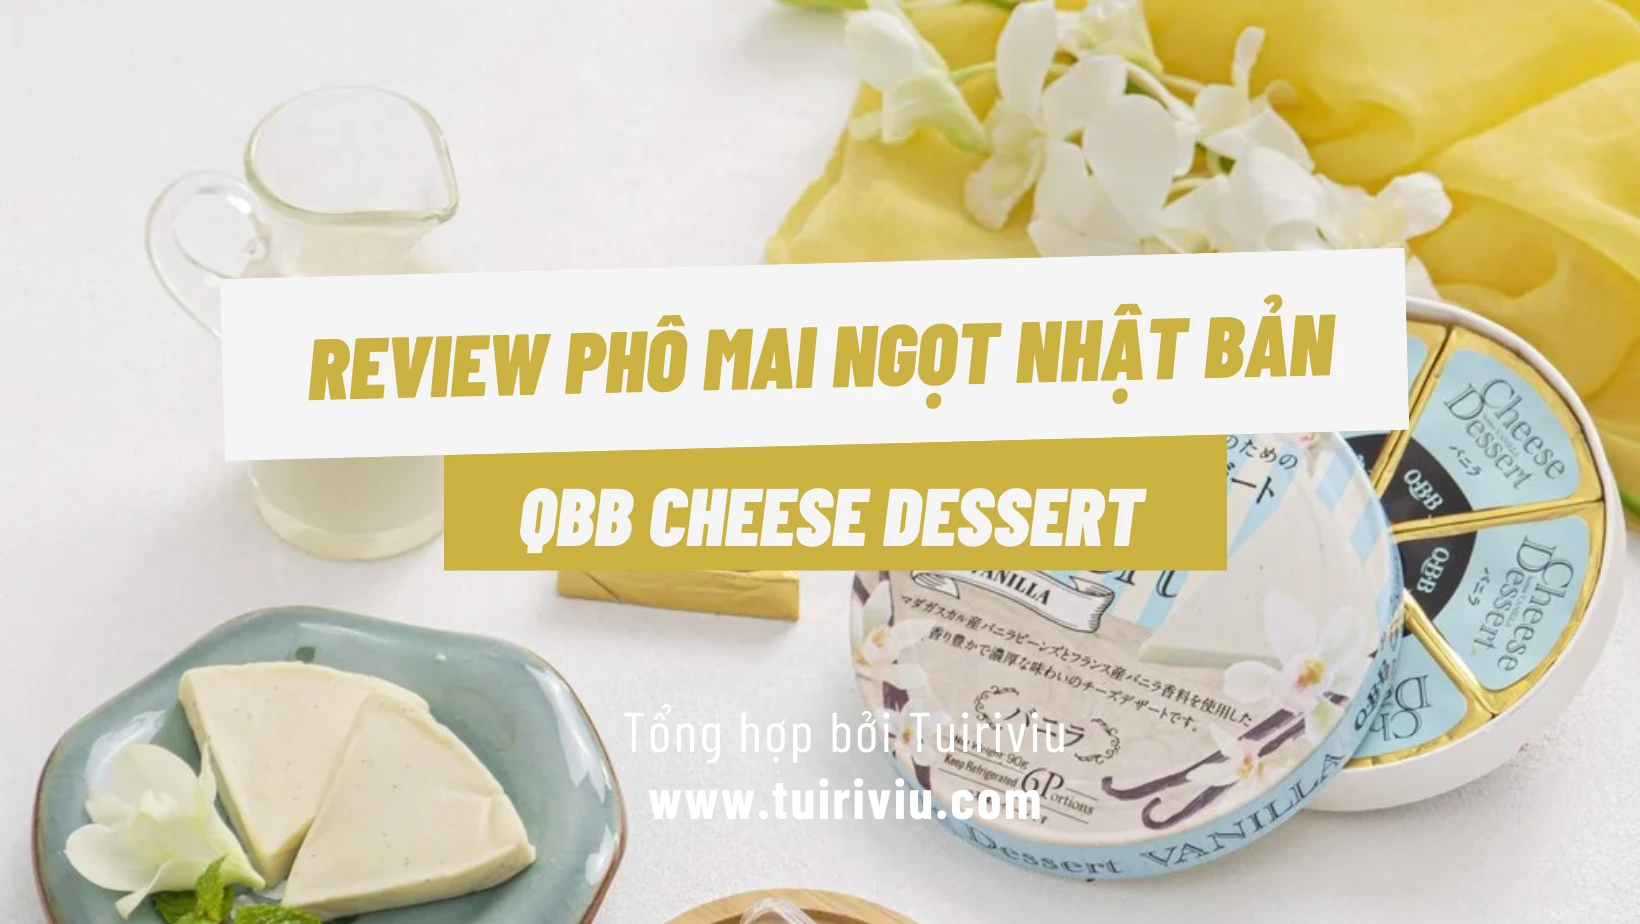 Review Phô mai Ngọt Nhật Bản QBB Cheese Dessert - Tuirviu